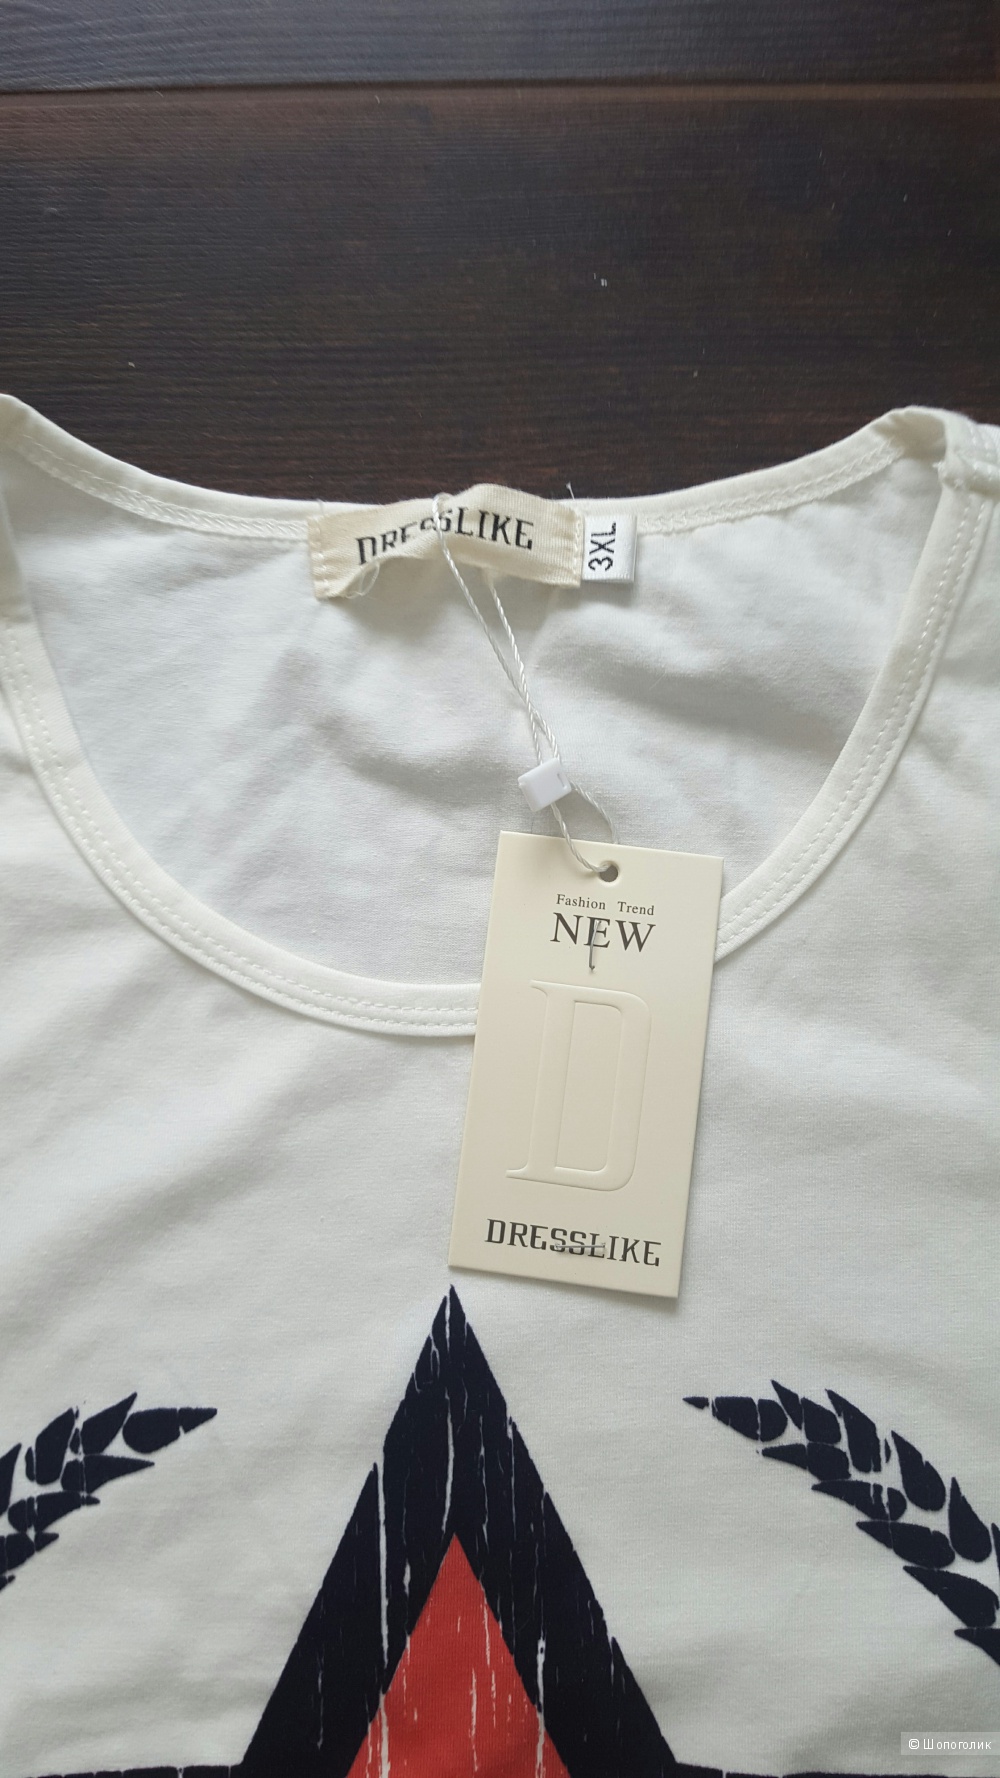 Сет из двух мужских футболок 1984 DEN MAN и DRESSLIKE, размер 52-54.